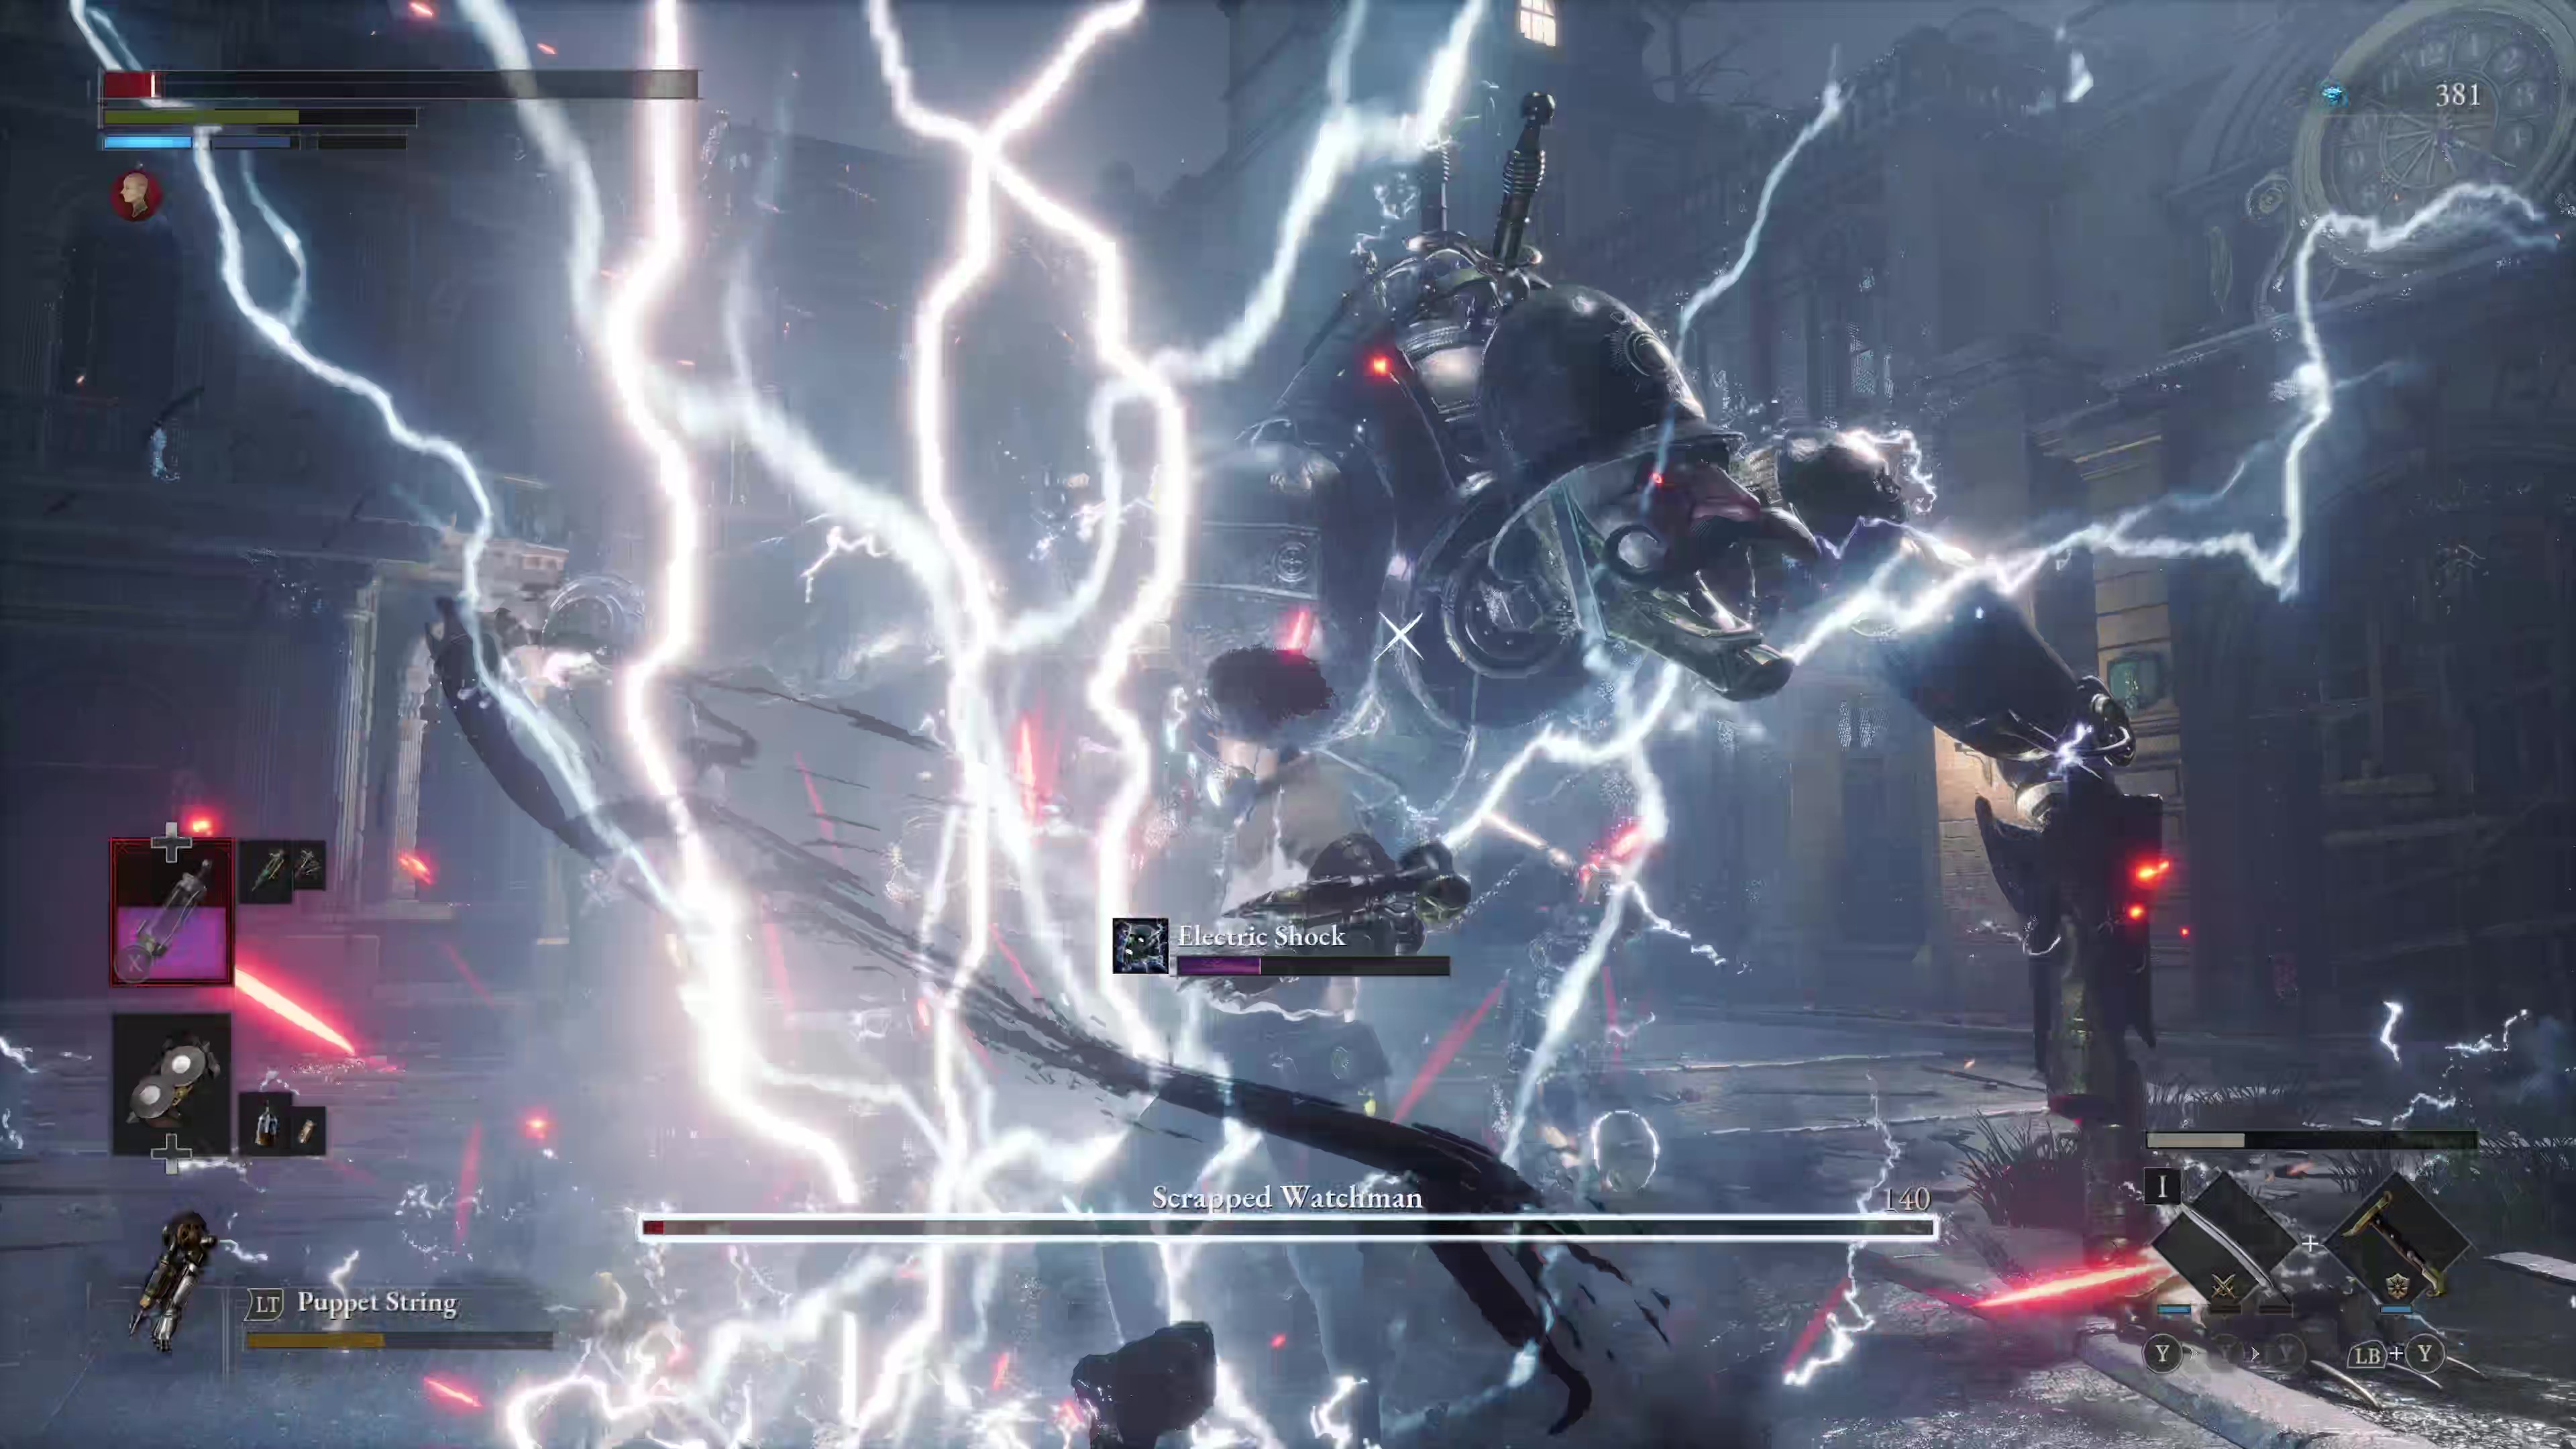 Captura de pantalla del juego del ataque Scrapped Watchman